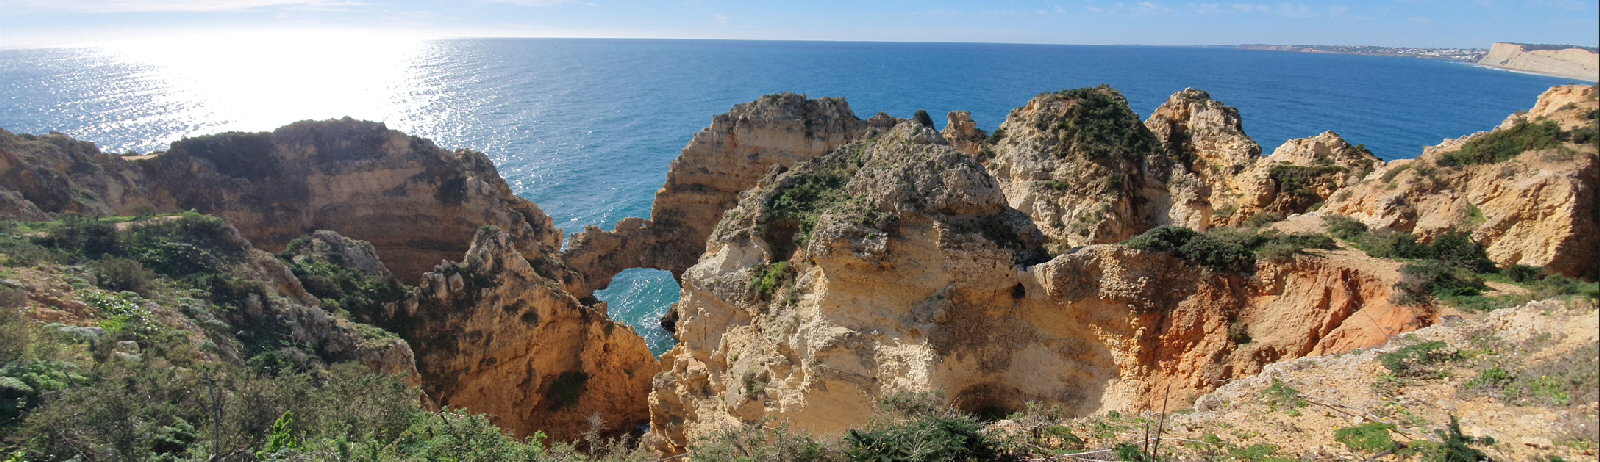 Costa de Algarve